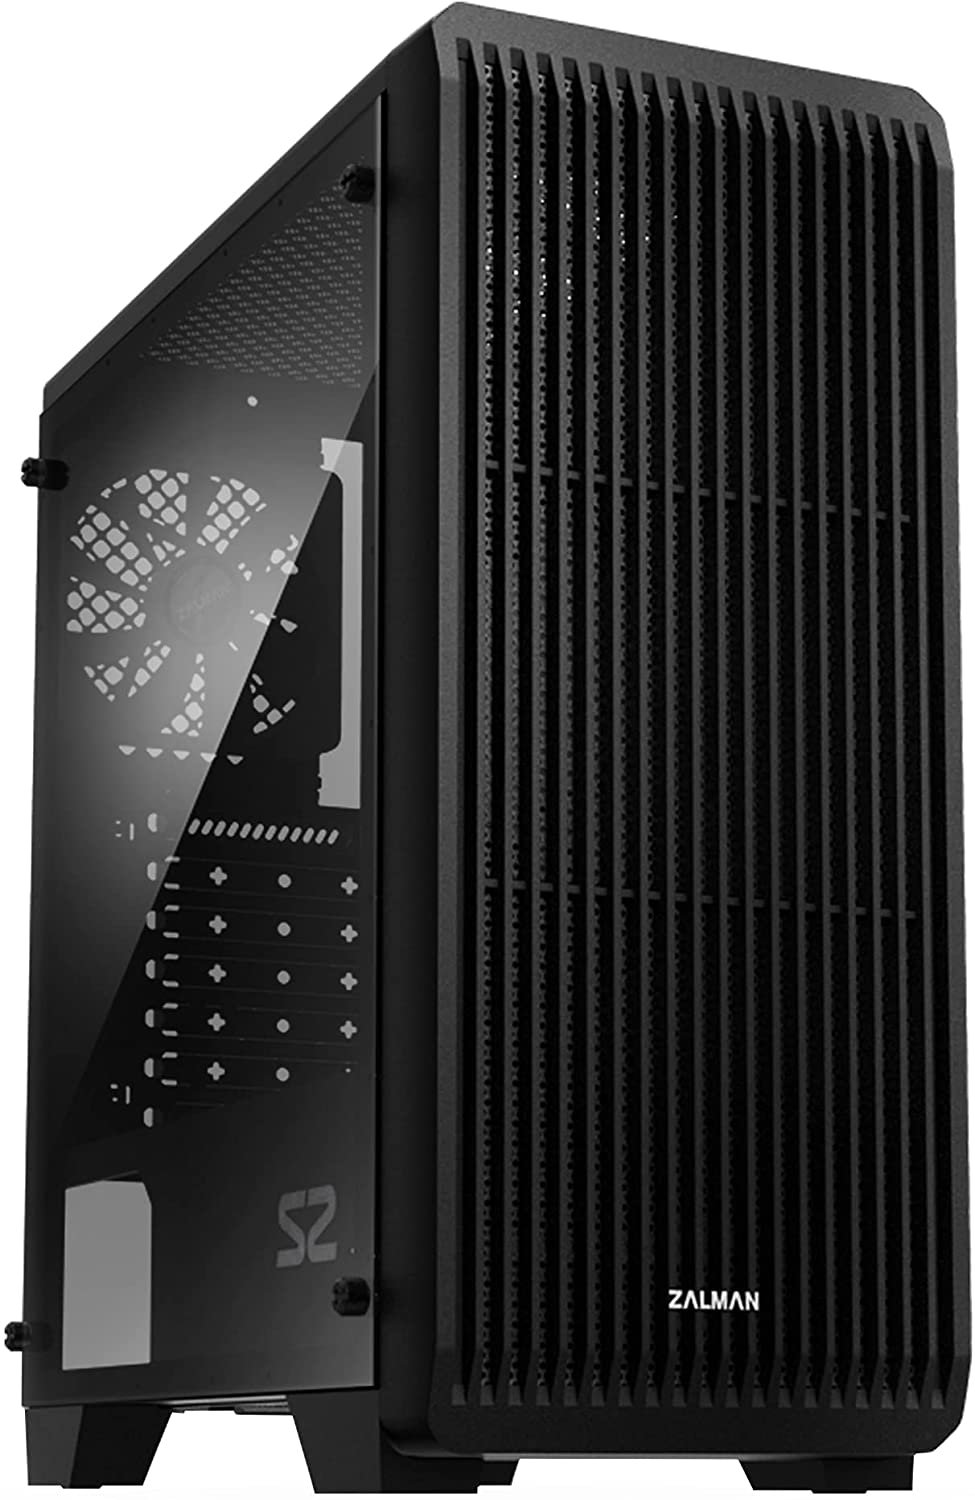 8 PC Case - Best $500 PC Build 2021